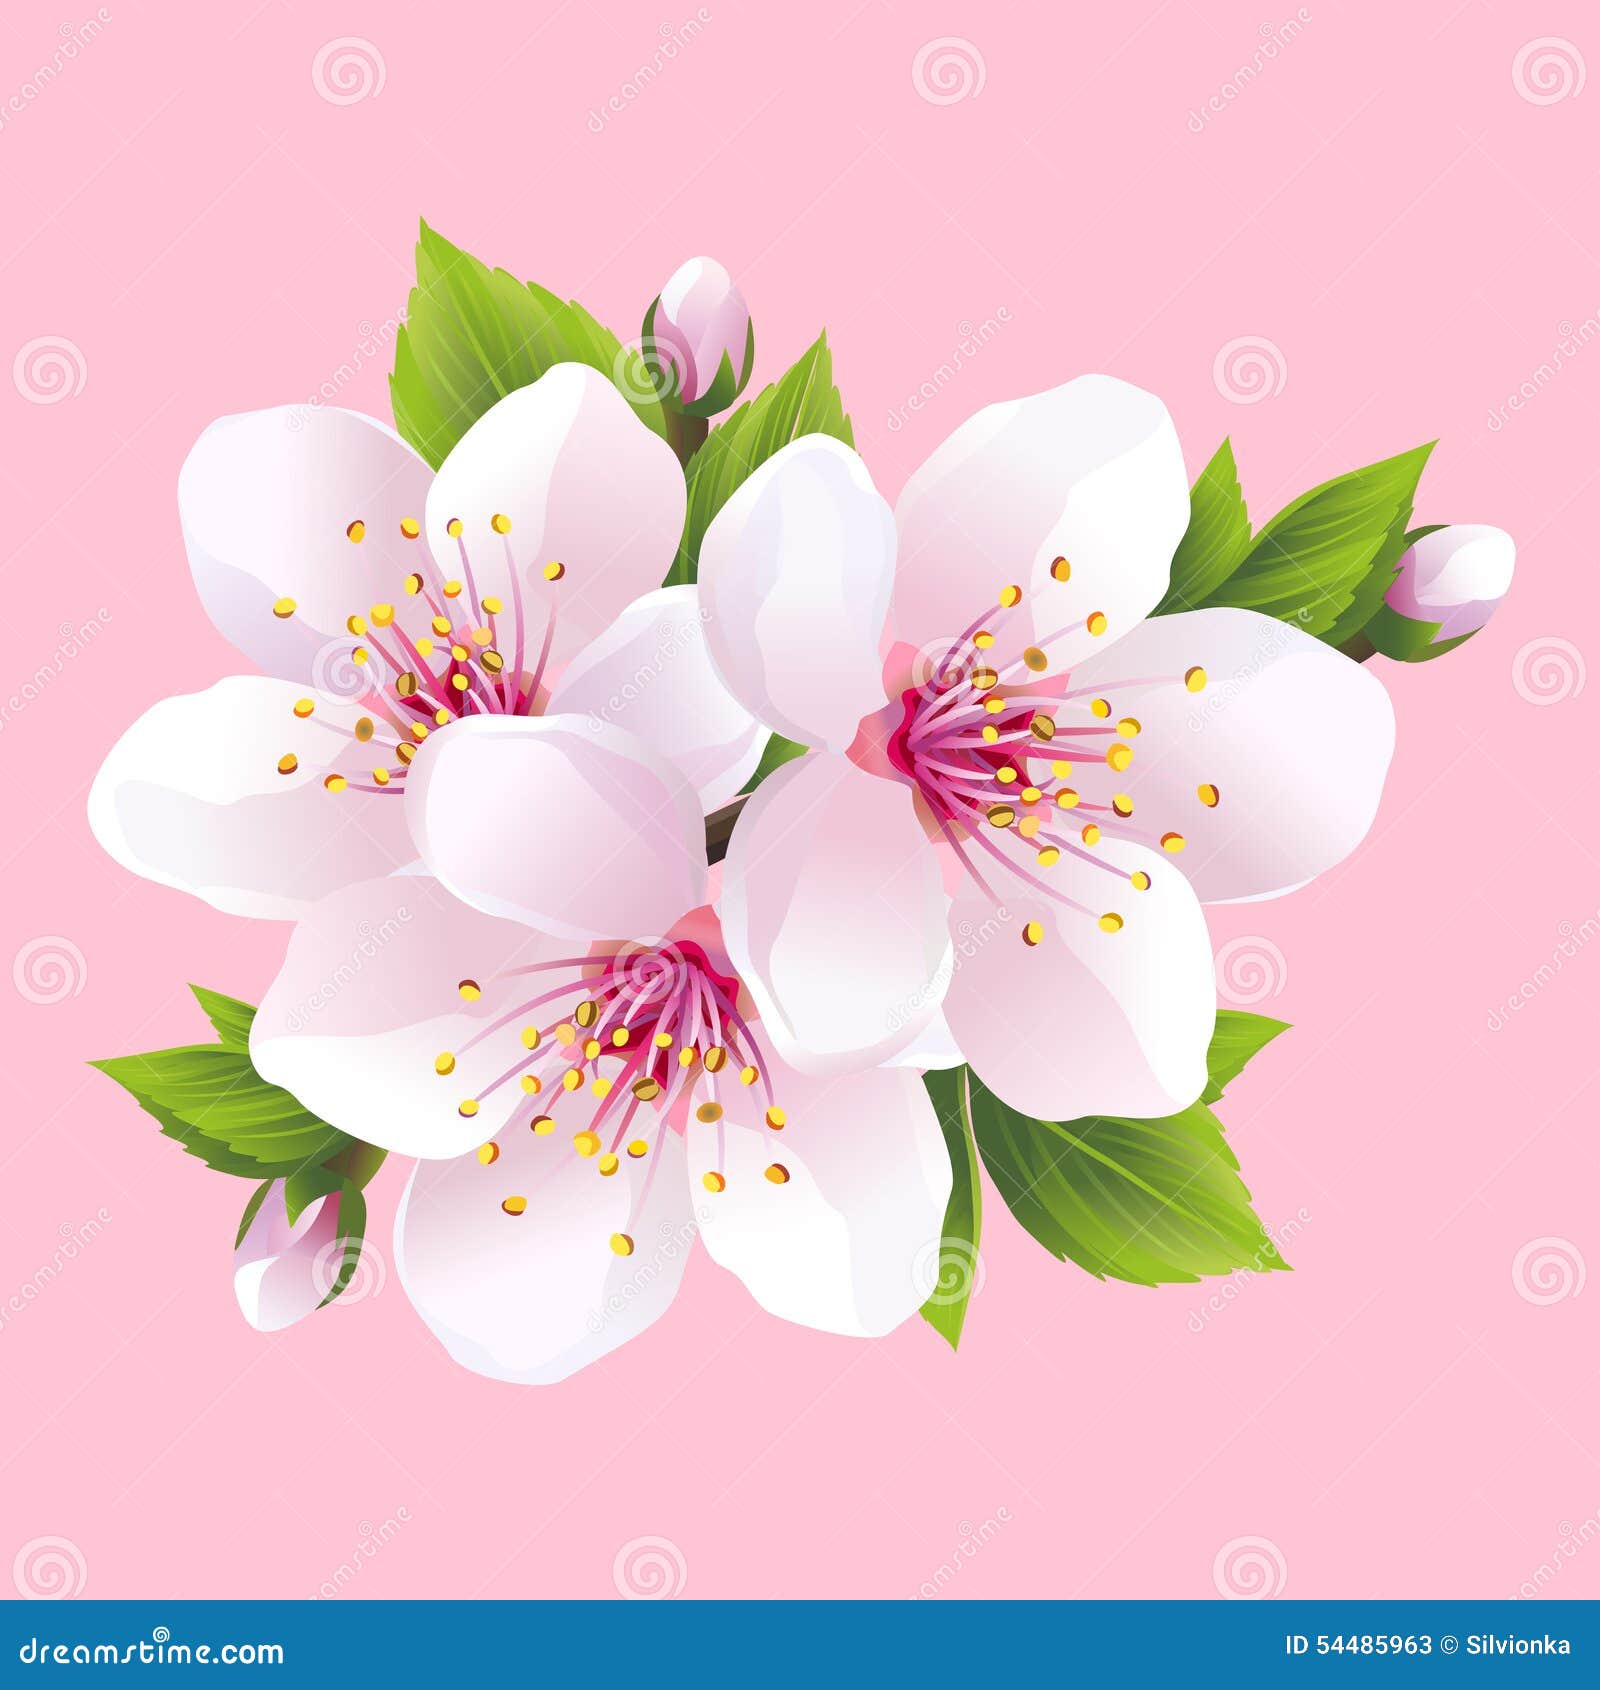 Branch of White Blossoming Sakura   Japanese Cherry Tree Stock ...